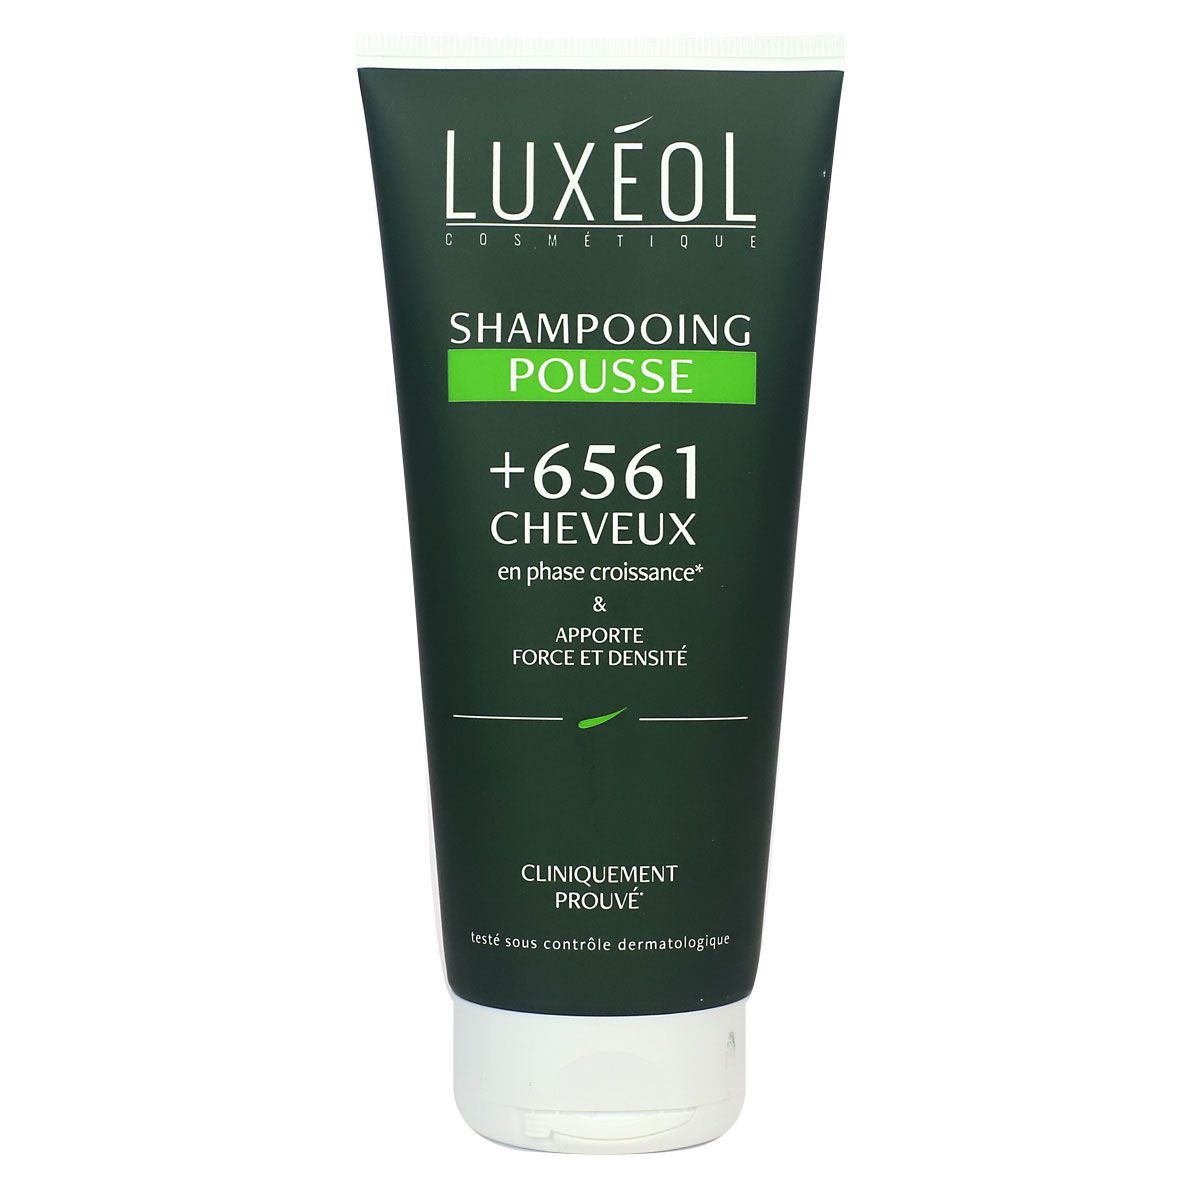 Le shampooing Pousse de la marque Luxéol est un produit capillaire qui nettoie.